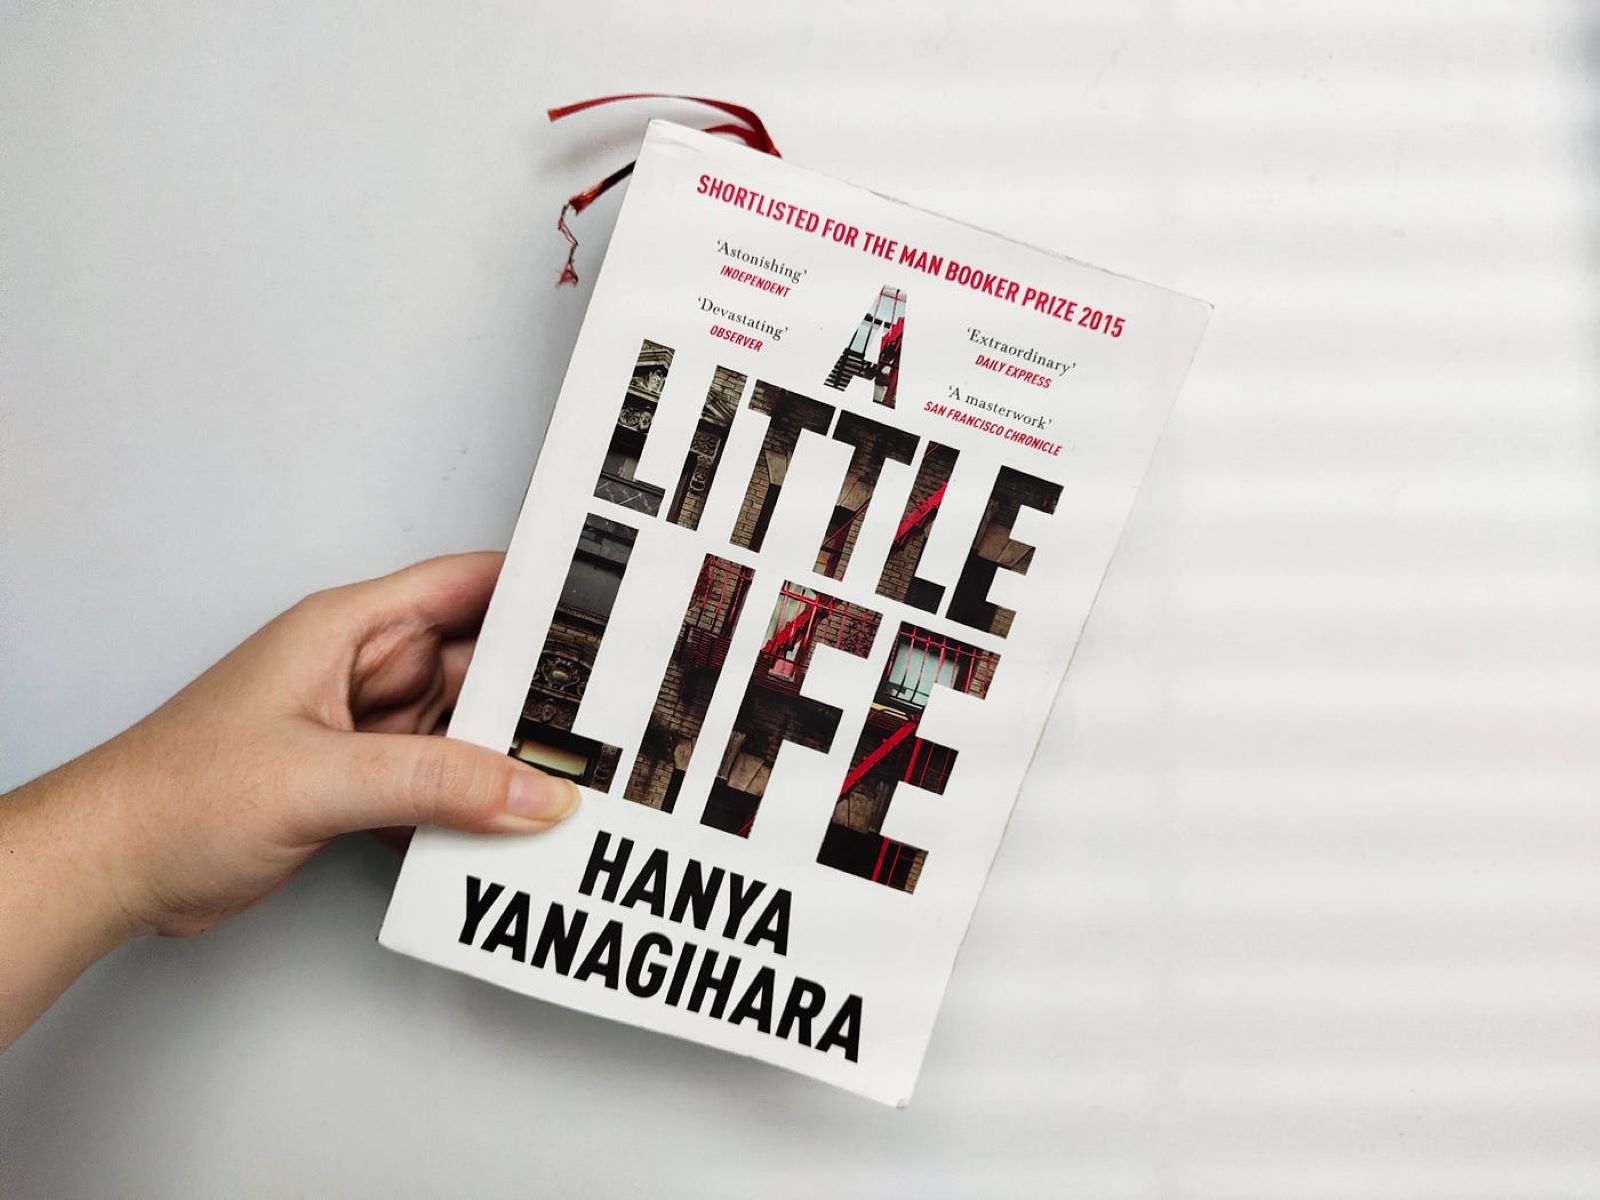 A little life книга